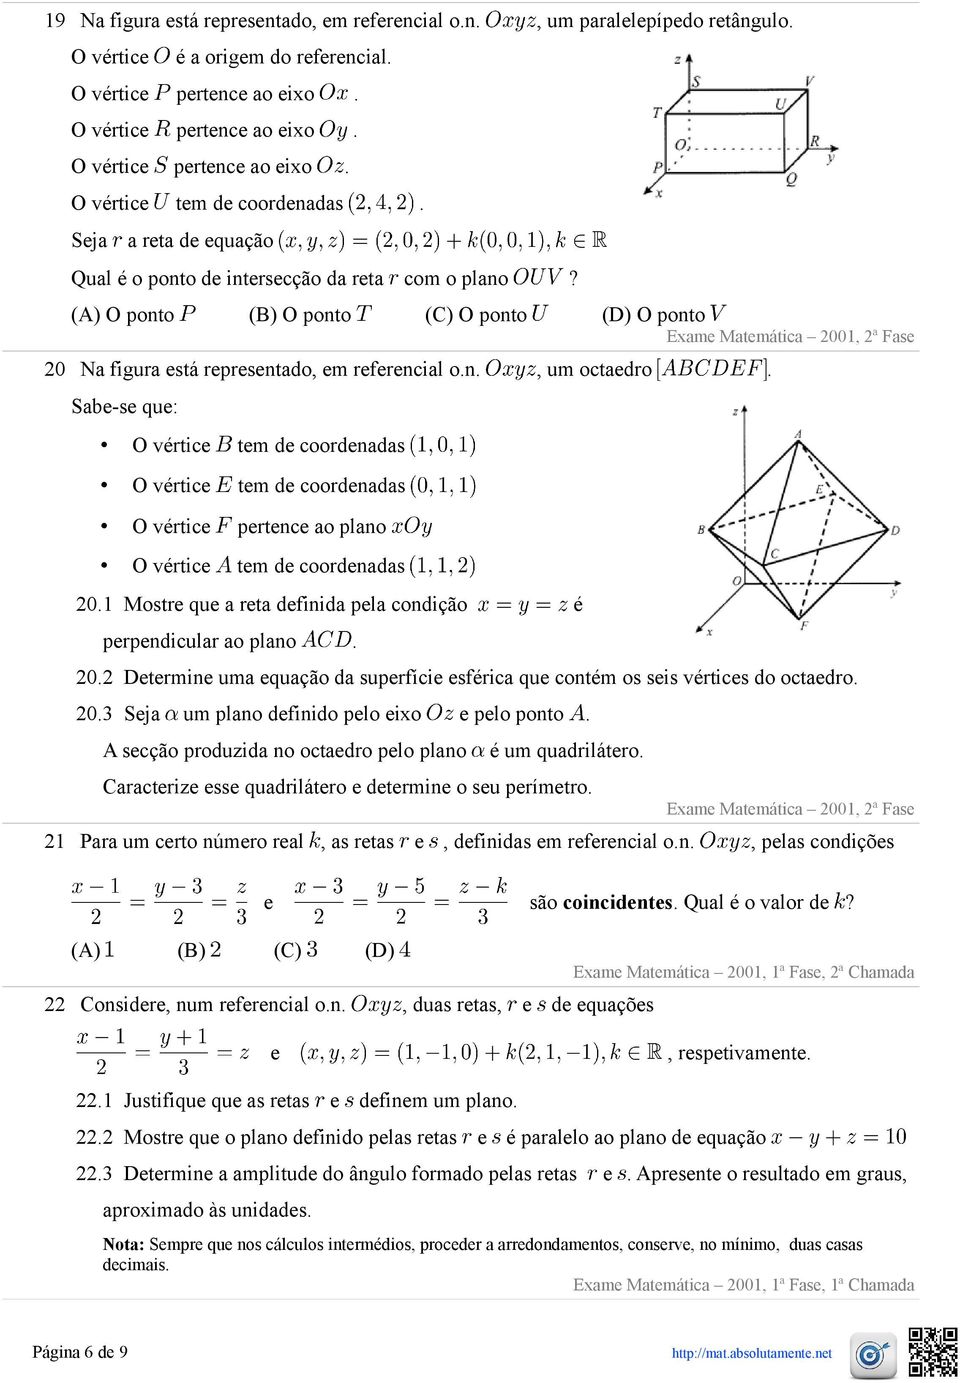 (A) O ponto (B) O ponto (C) O ponto (D) O ponto Exame Matemática 2001, 2ª Fase 20 Na figura está representado, em referencial o.n., um octaedro.